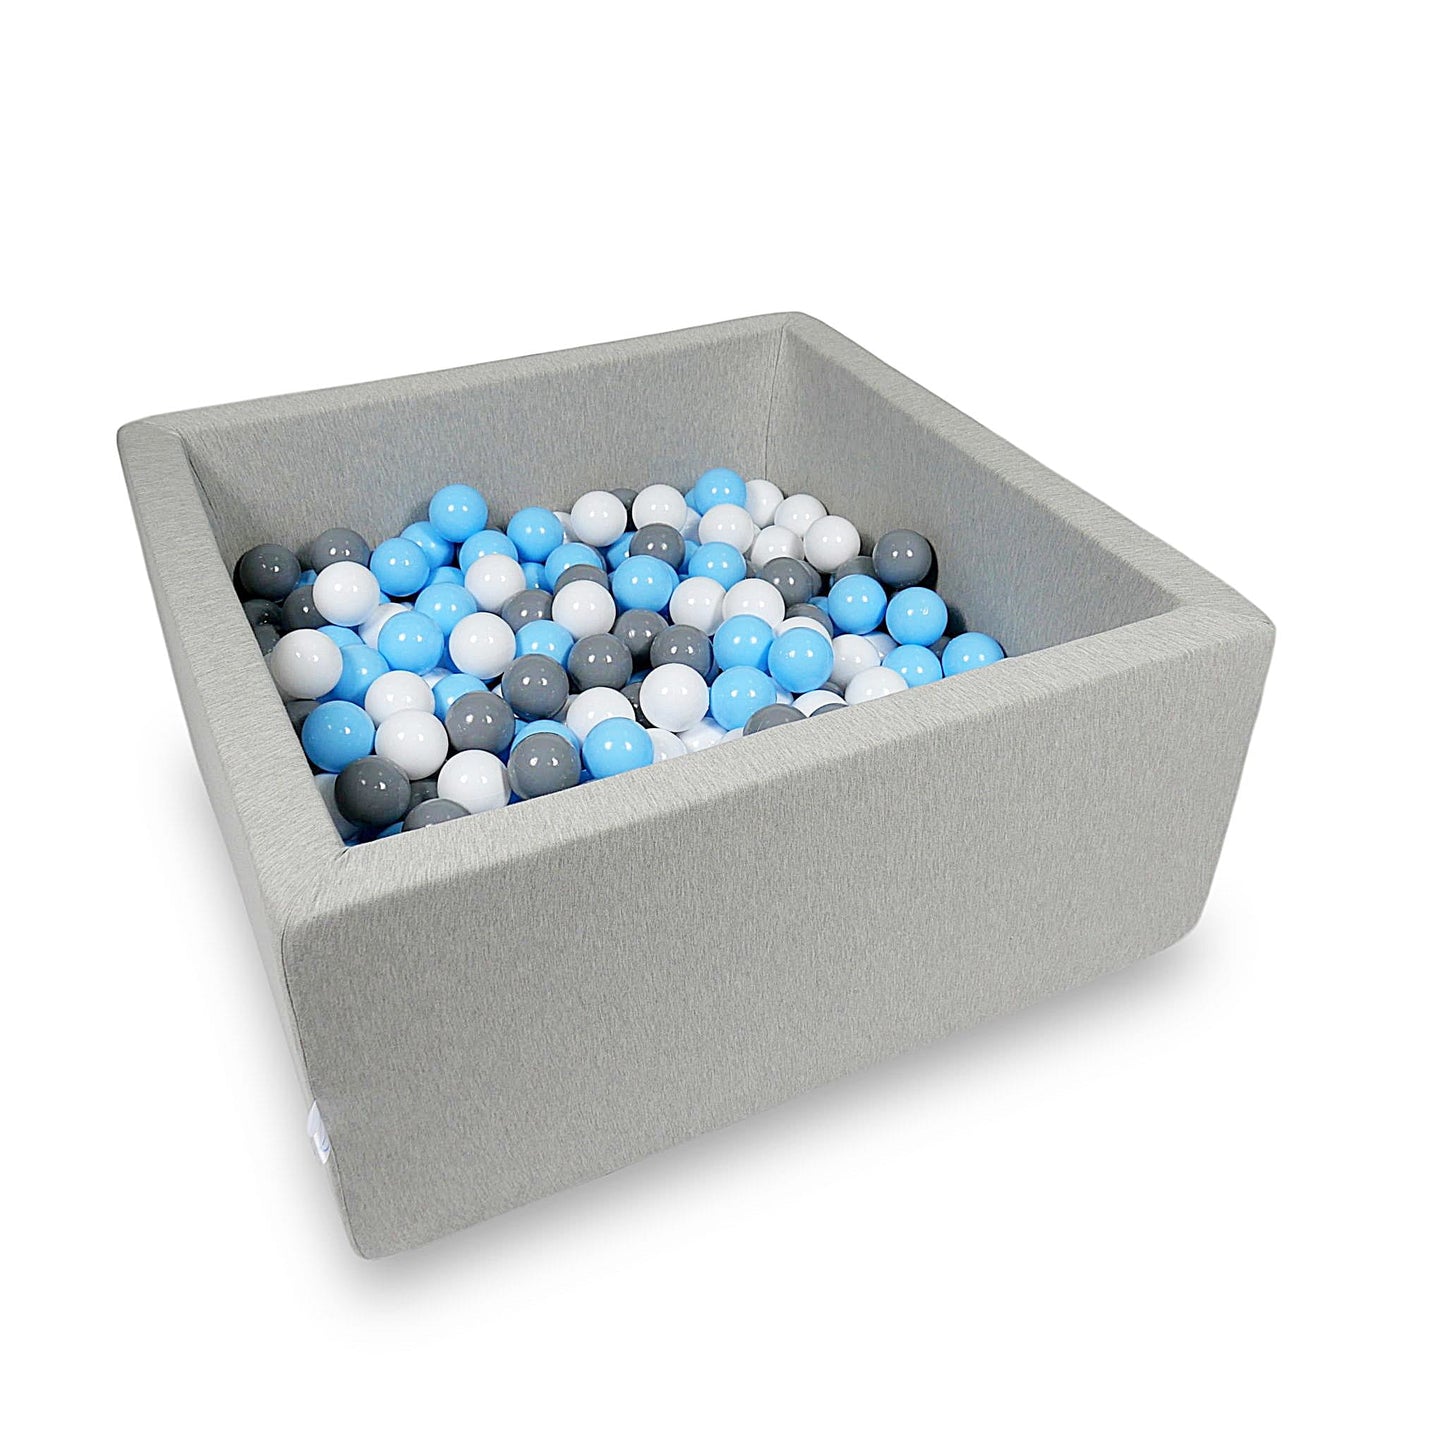 Piscine à Balles 90x90x40cm gris clair avec balles 400pcs (bleu clair, blanc, gris)